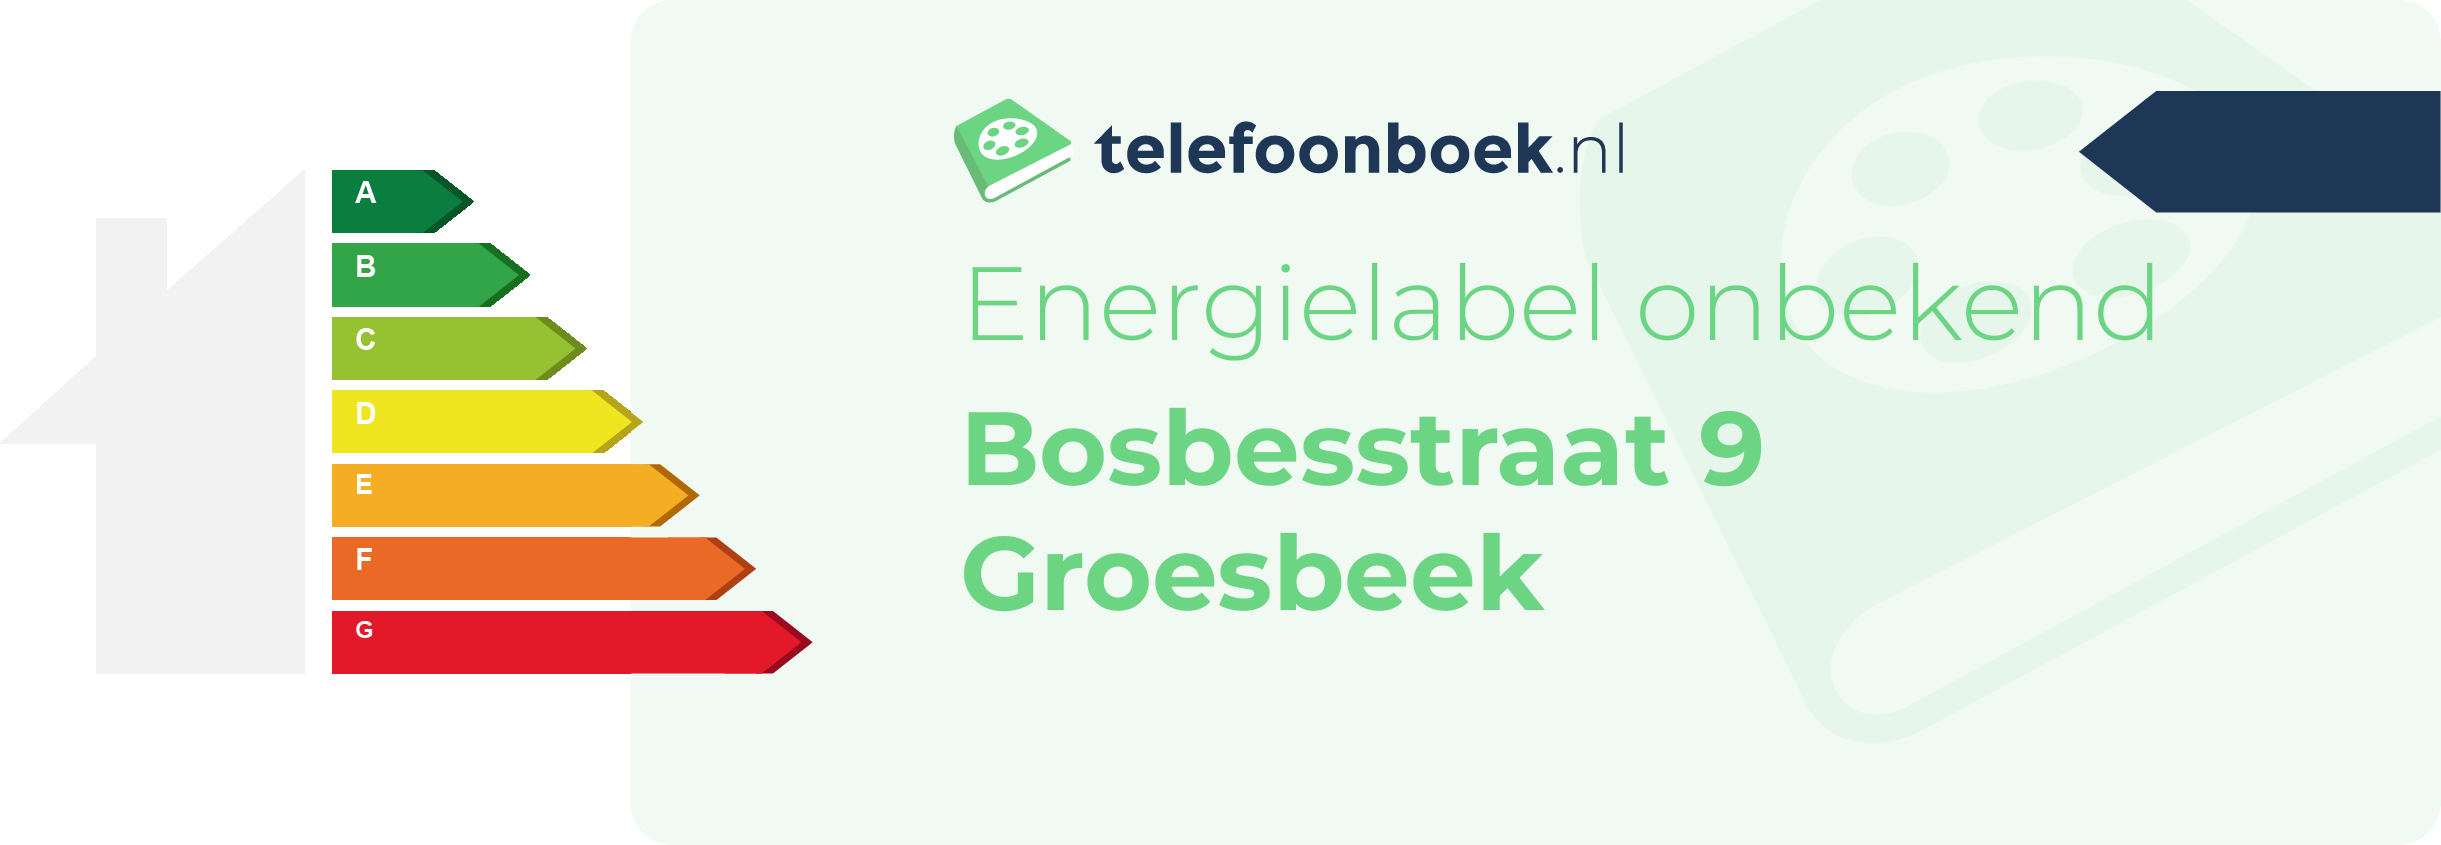 Energielabel Bosbesstraat 9 Groesbeek